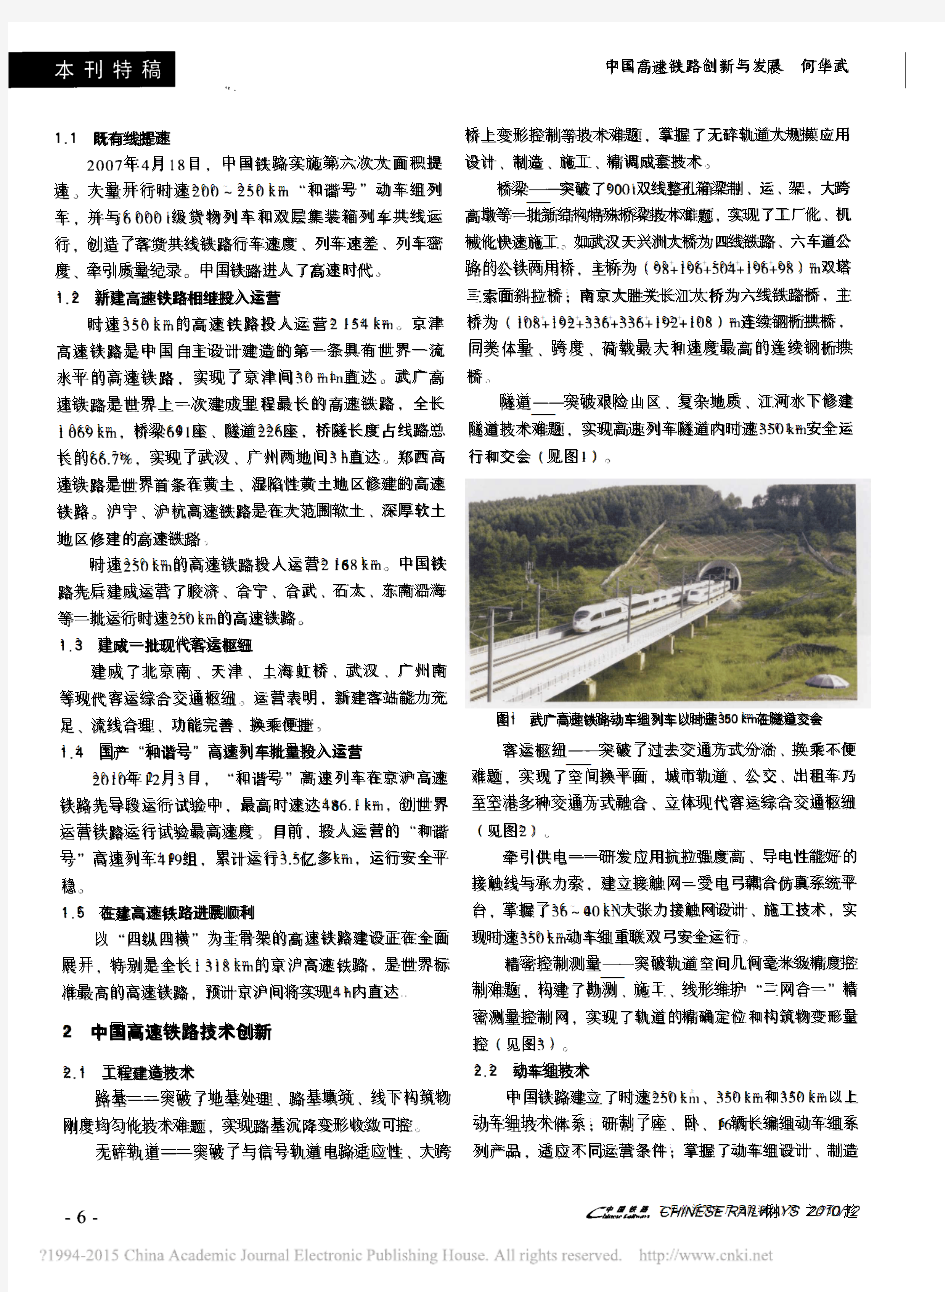 中国高速铁路创新与发展